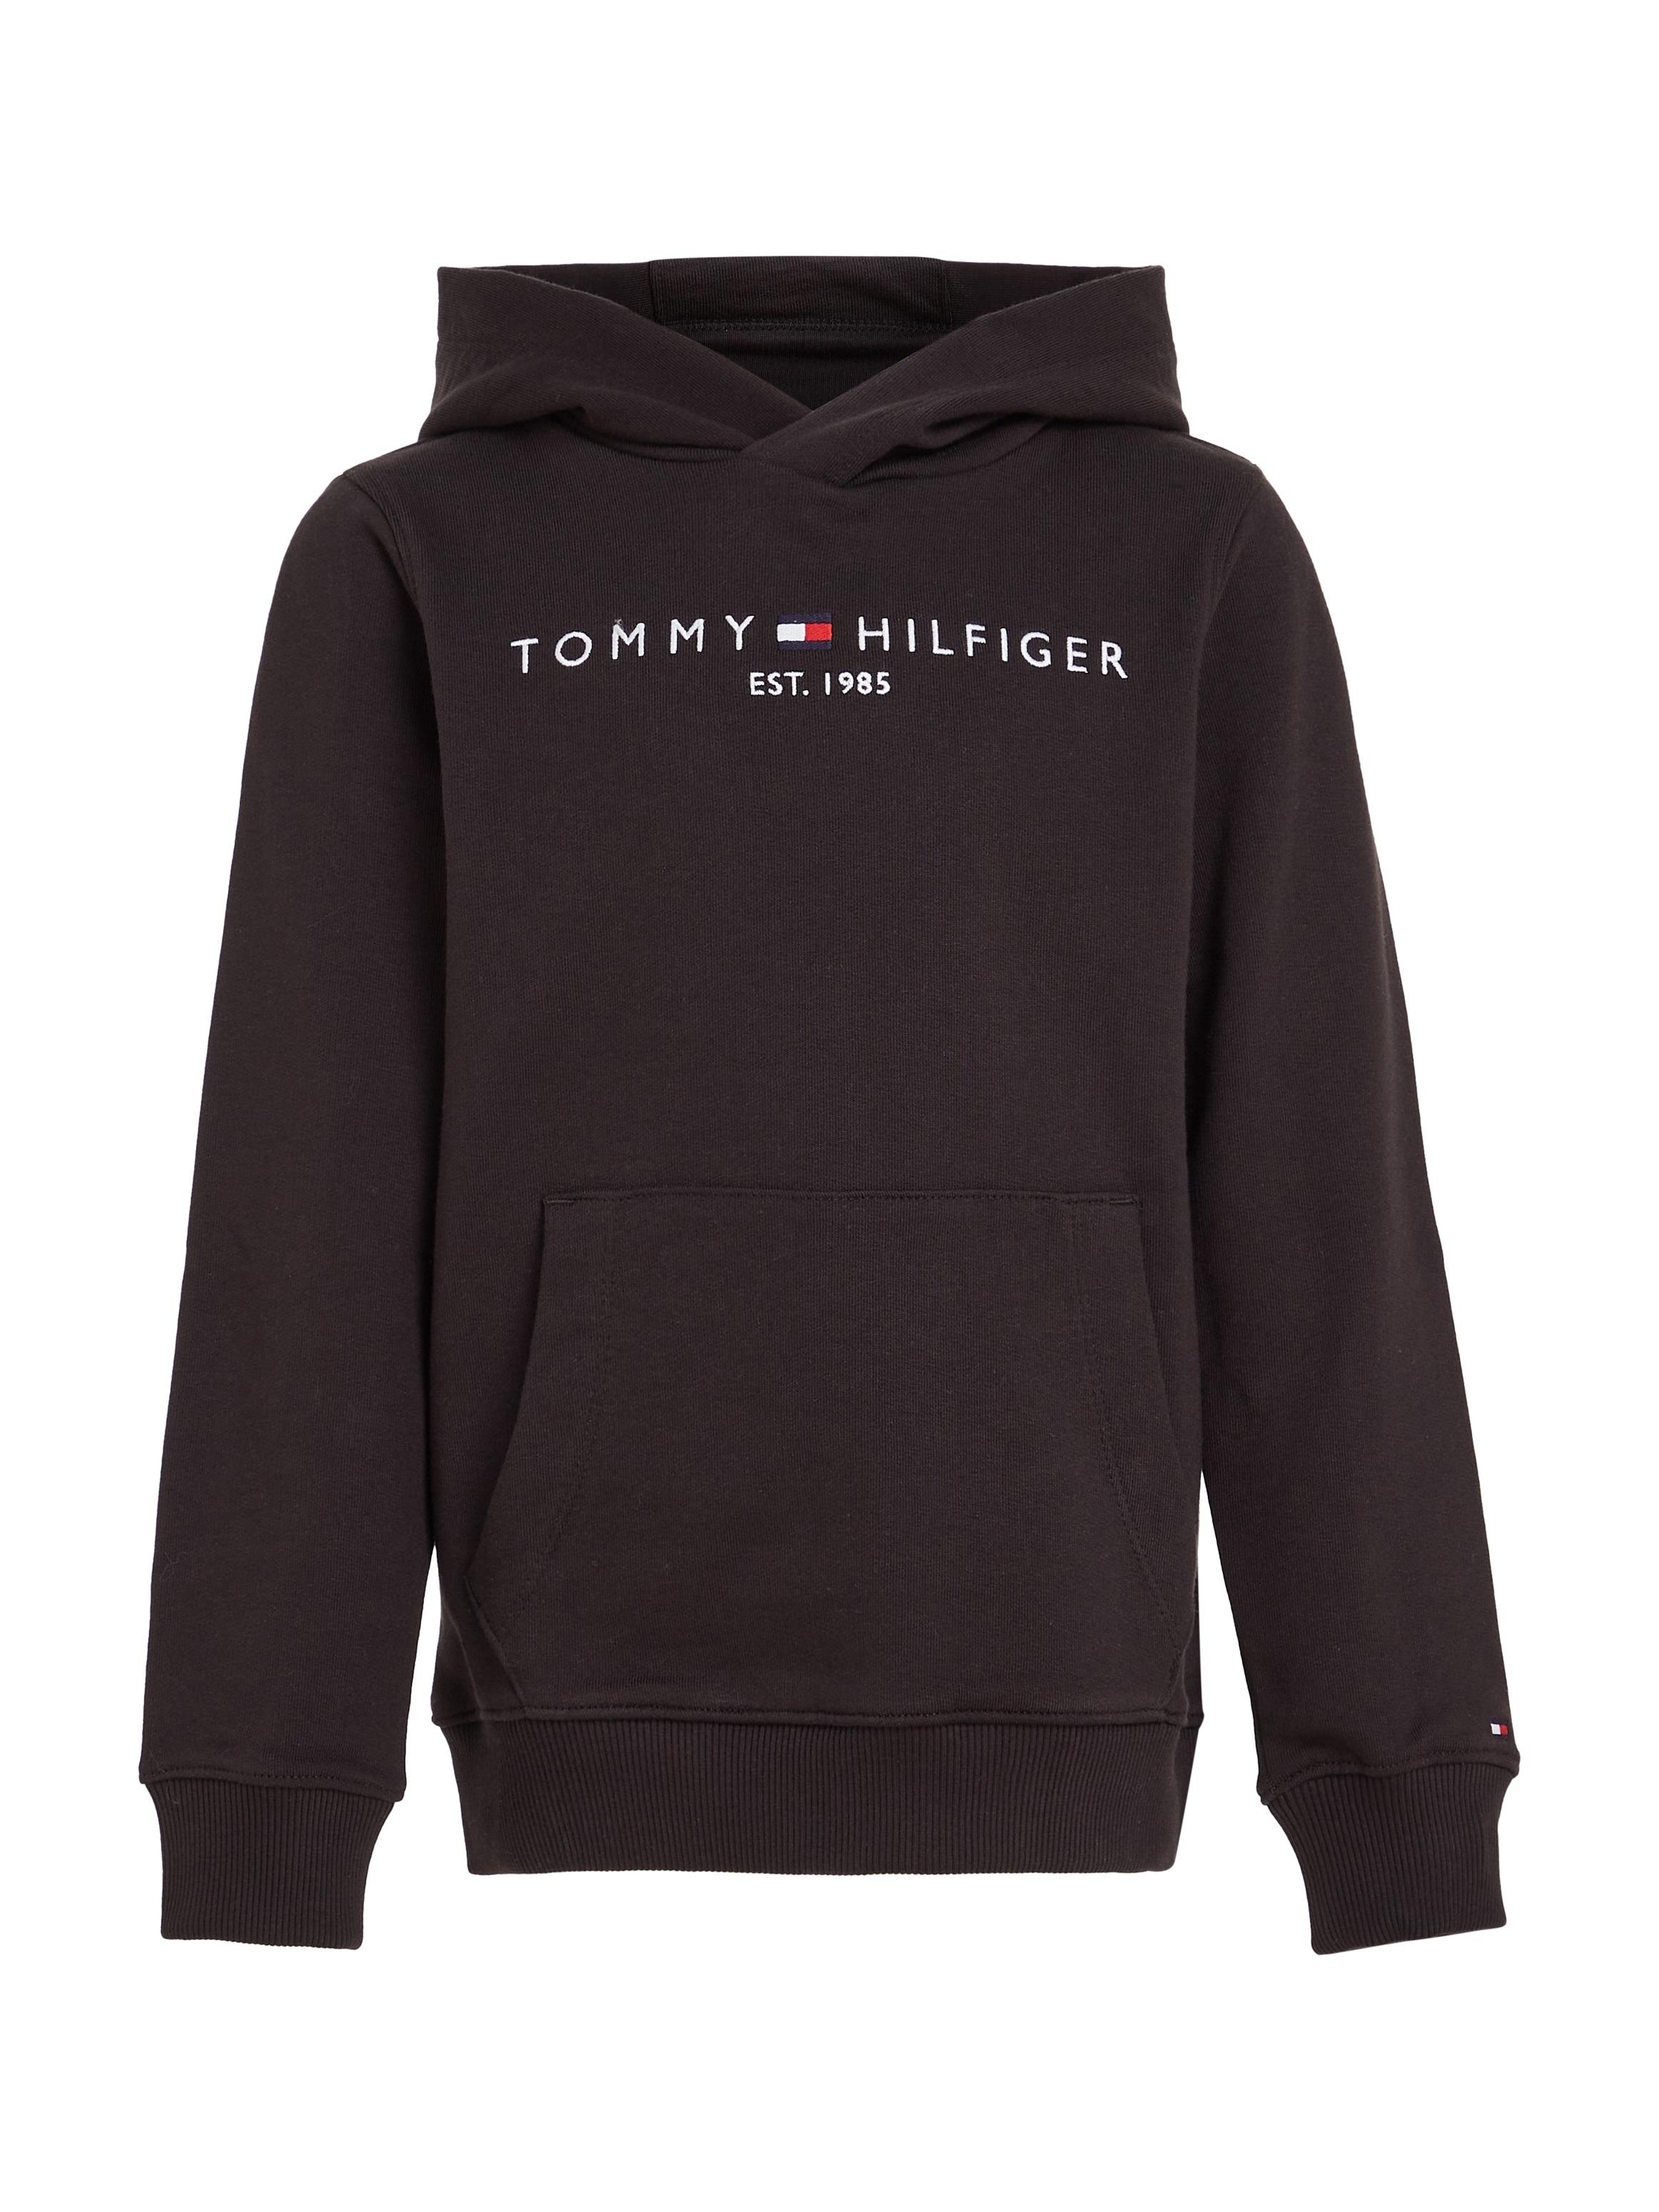 Mädchen Kapuzensweatshirt Tommy HOODIE«, Jungen bestellen Mindestbestellwert Hilfiger Junior Kids »ESSENTIAL Trendige ohne MiniMe,für Kinder und